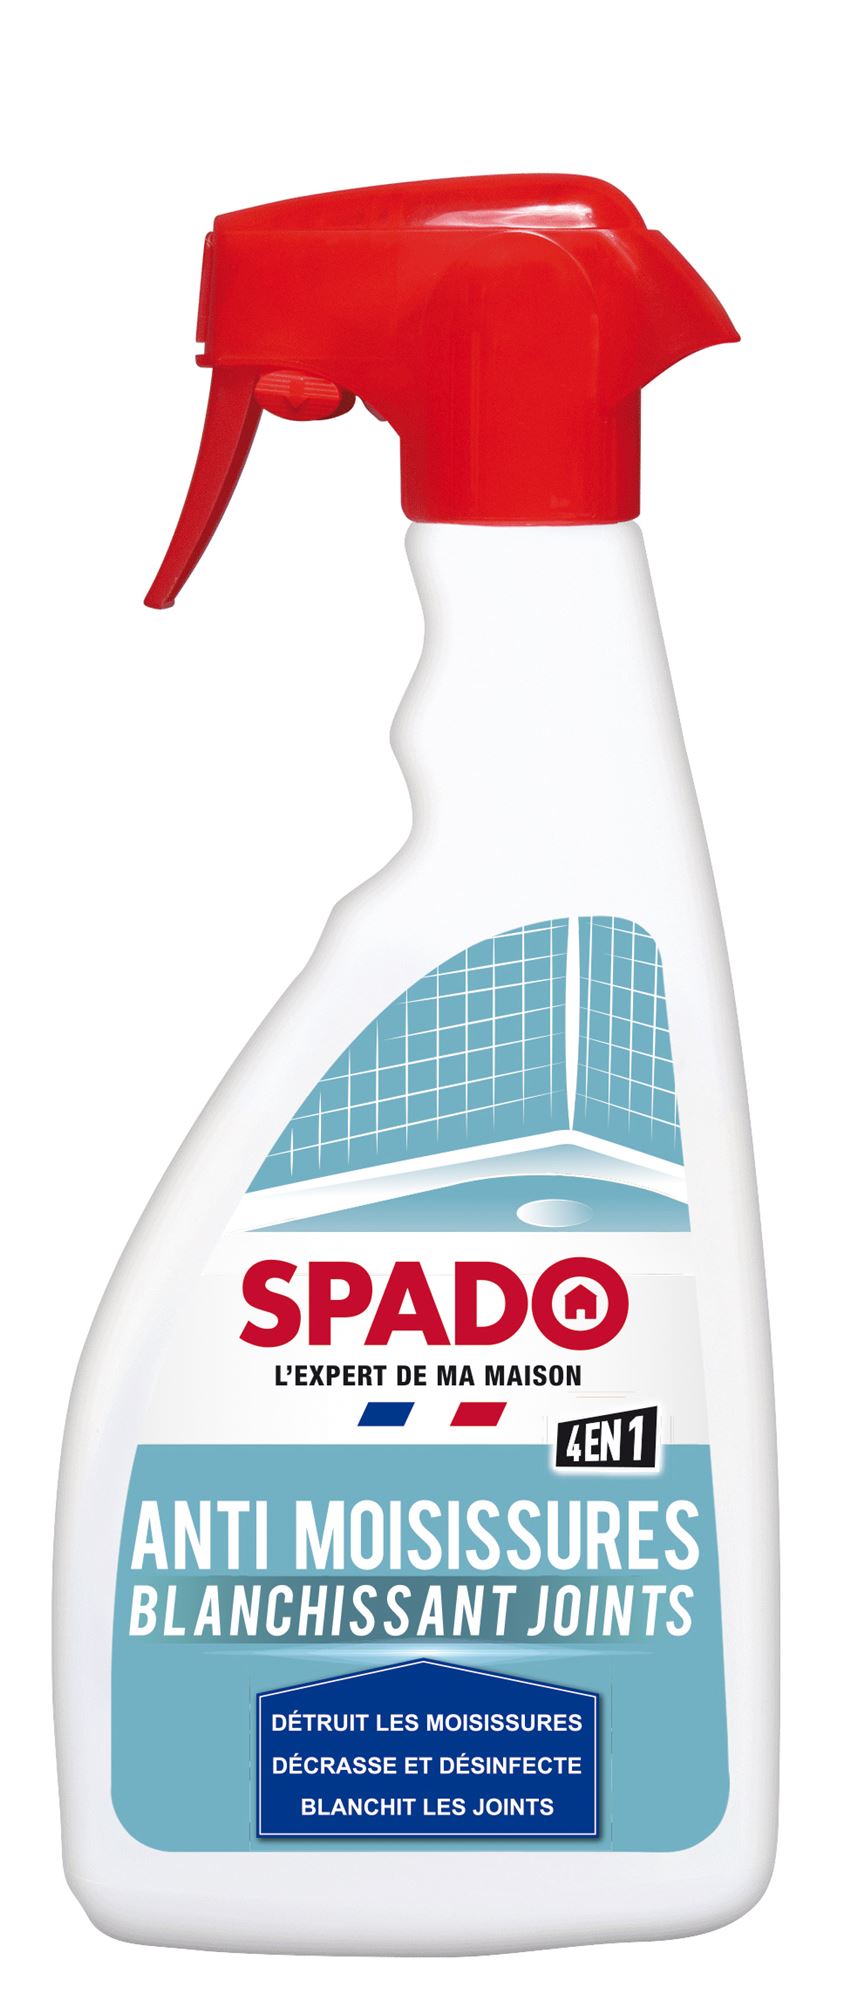 Anti moisissure Spado promo